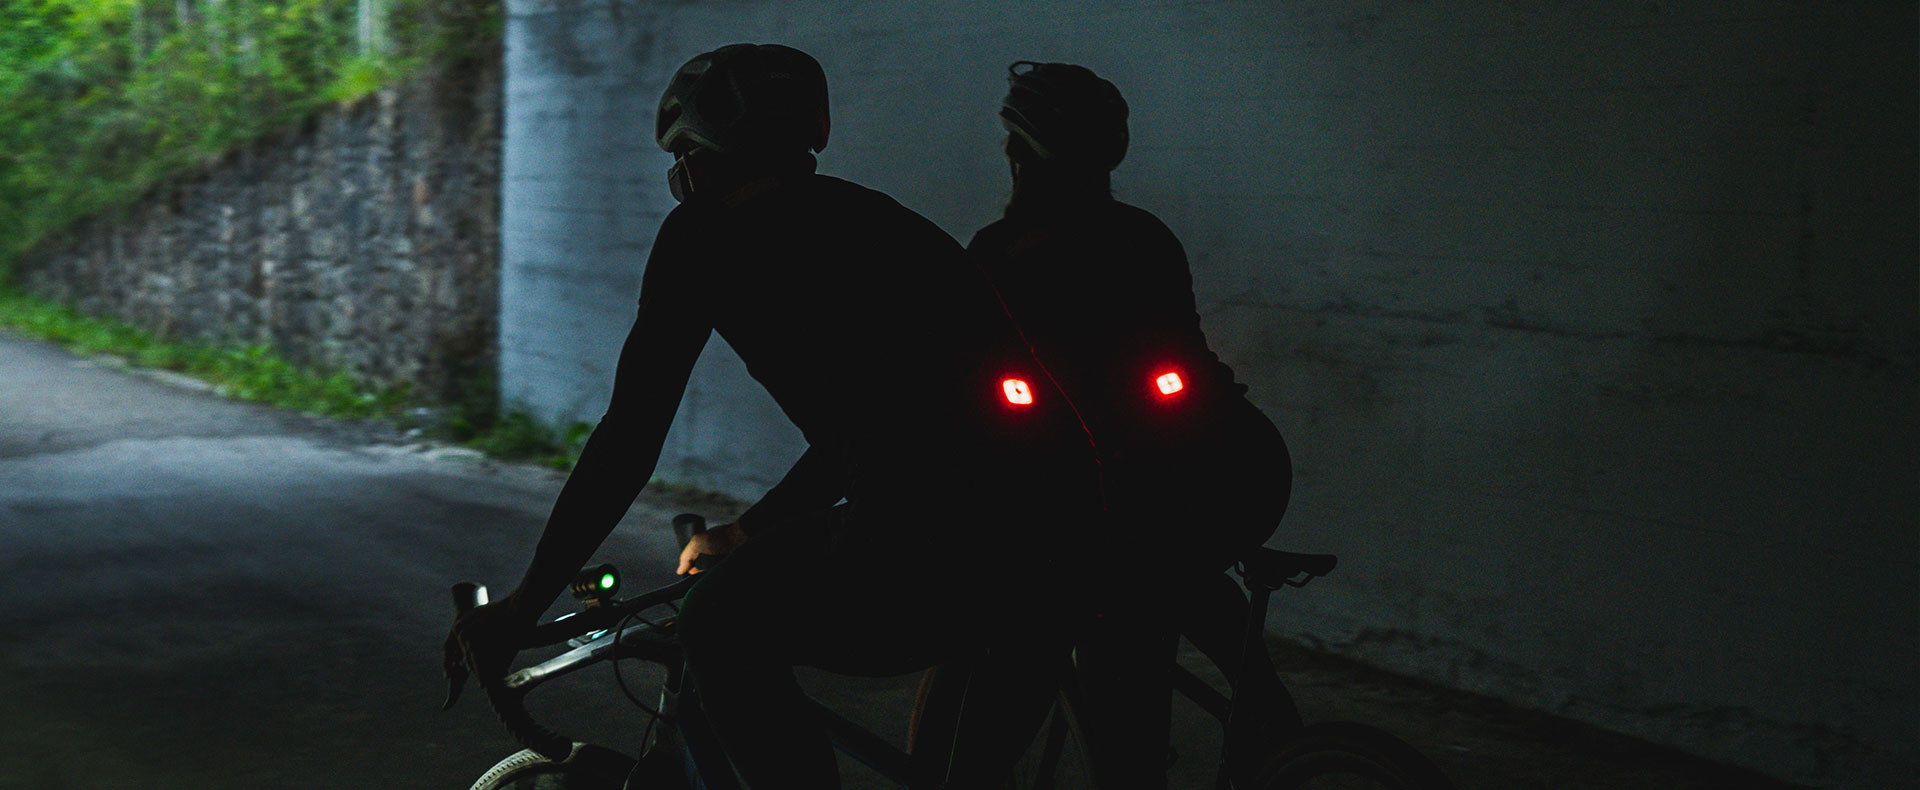 Chaqueta ciclismo con luz seguridad ANTARES